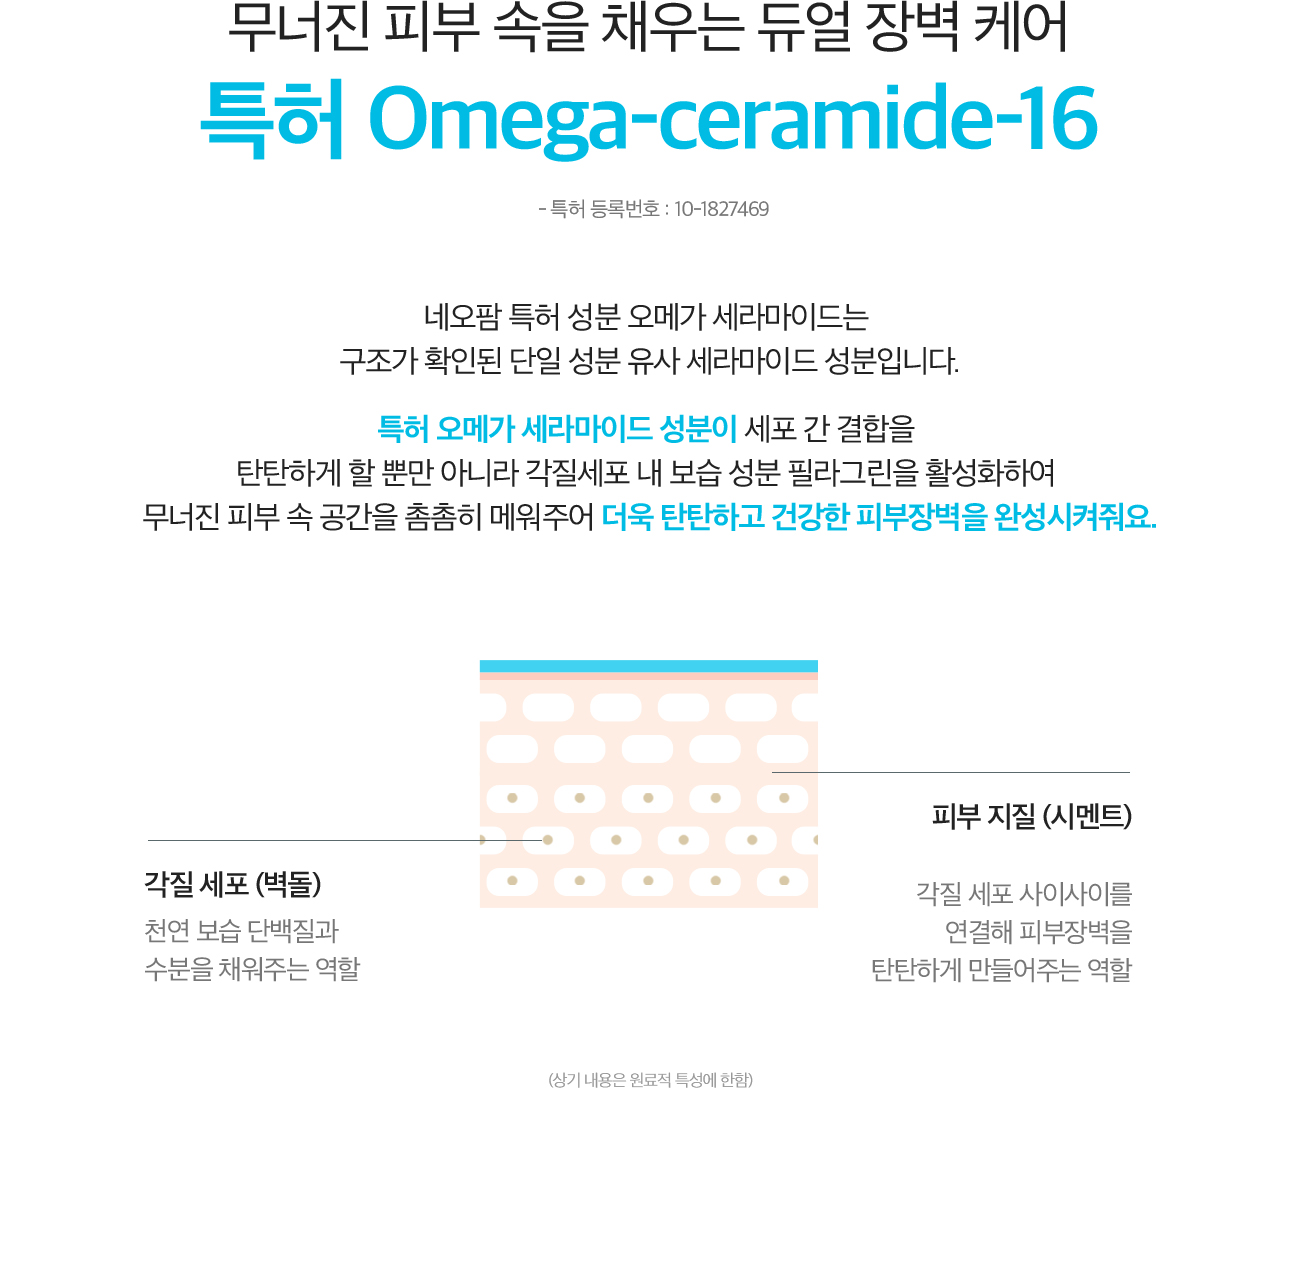 무너진 피부 속을 채우는 듀얼 장벽 케어 특허 Omega-ceramide-16